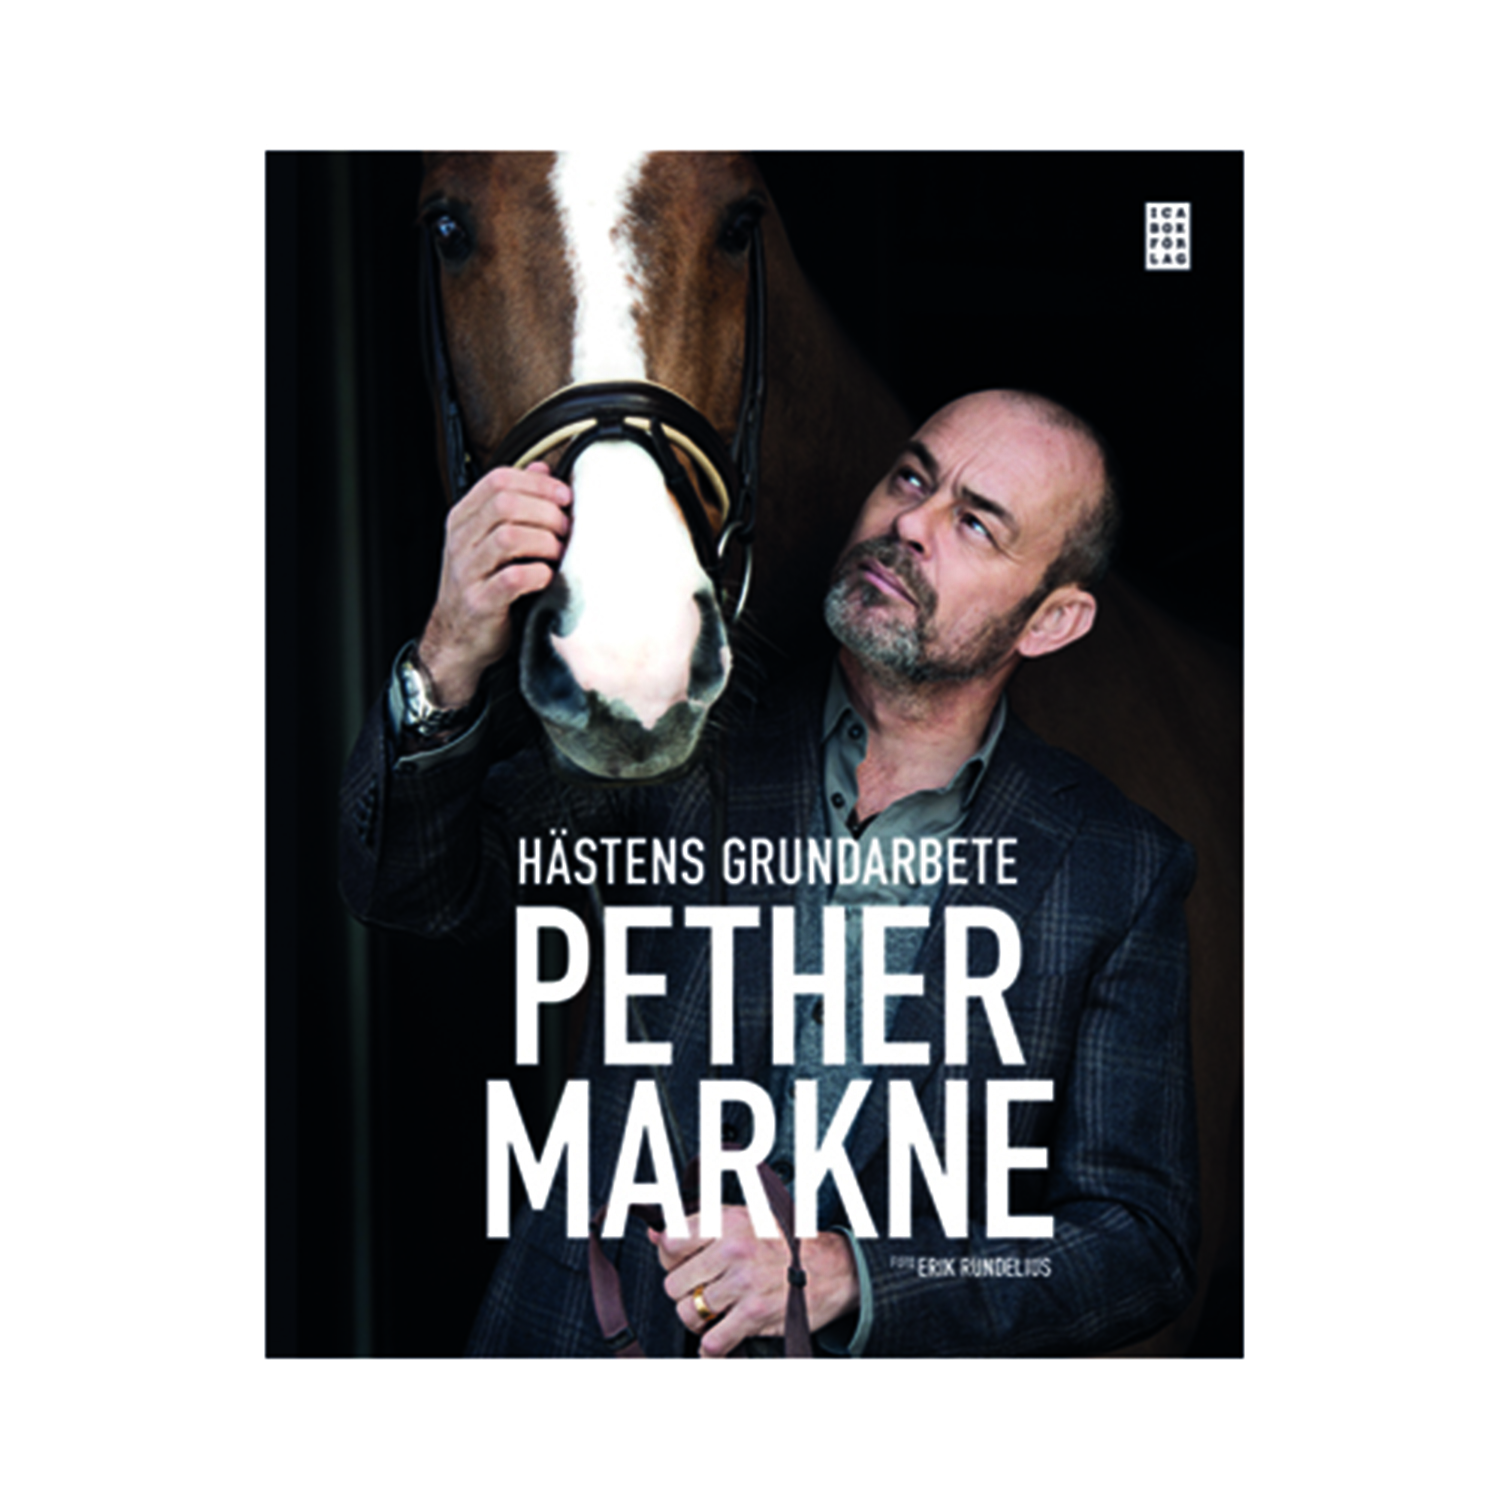 Hästens grundarbete av Pether Markne